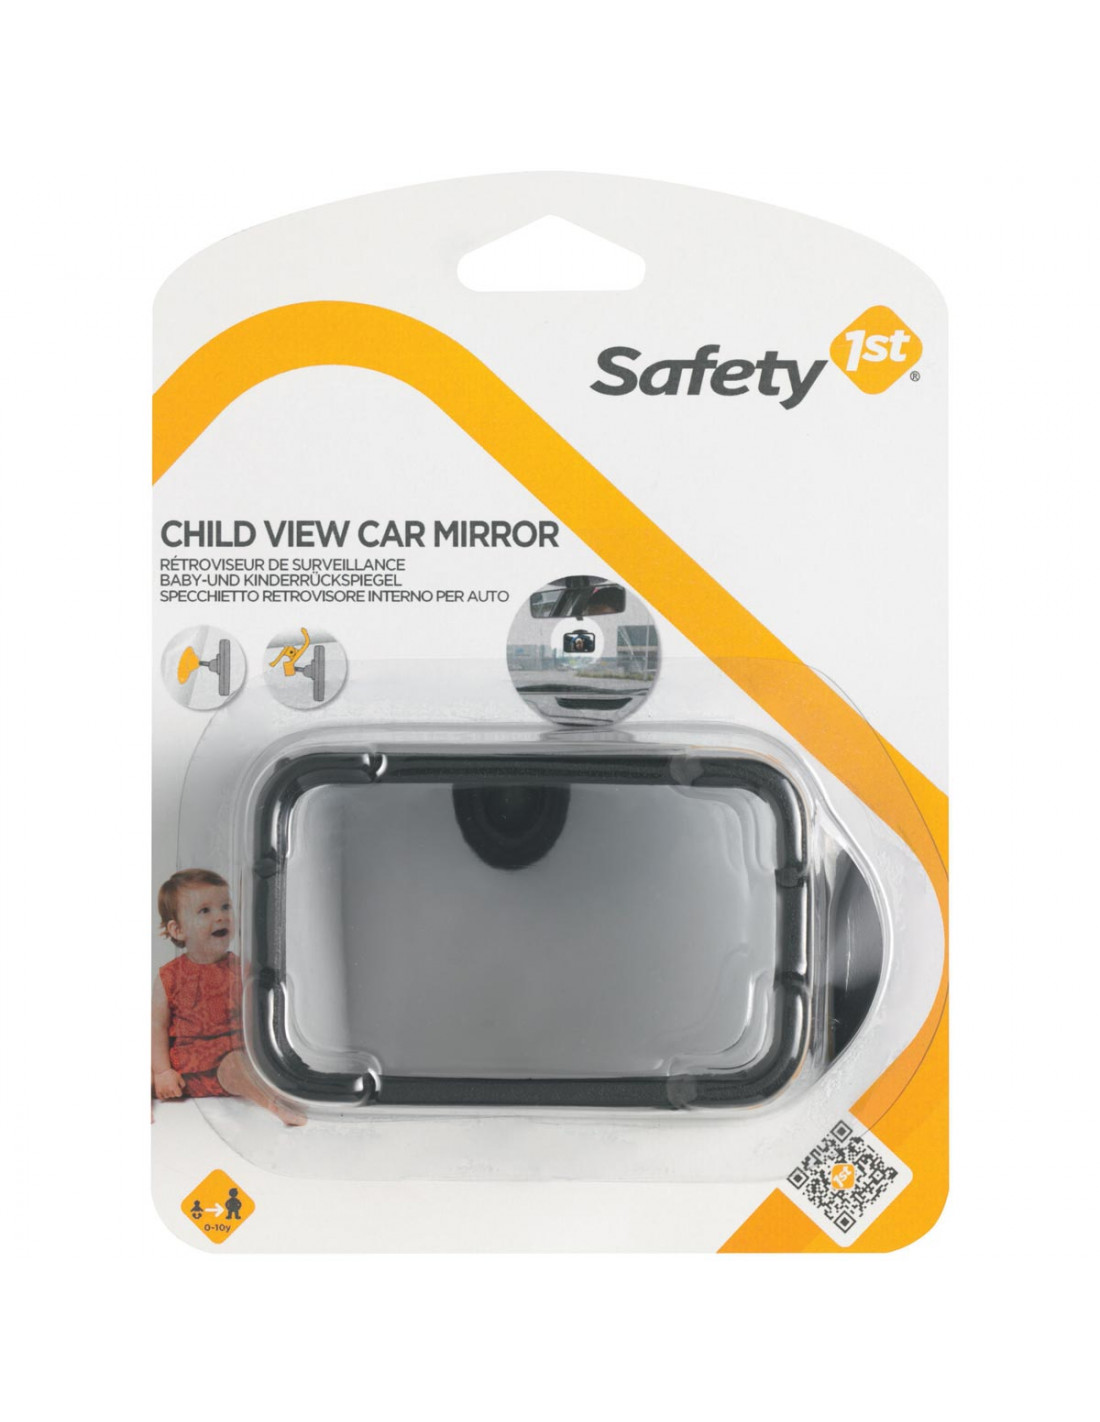 Miroir de surveillance arrière pour siège bébé SAFETYBABY - Équipement auto